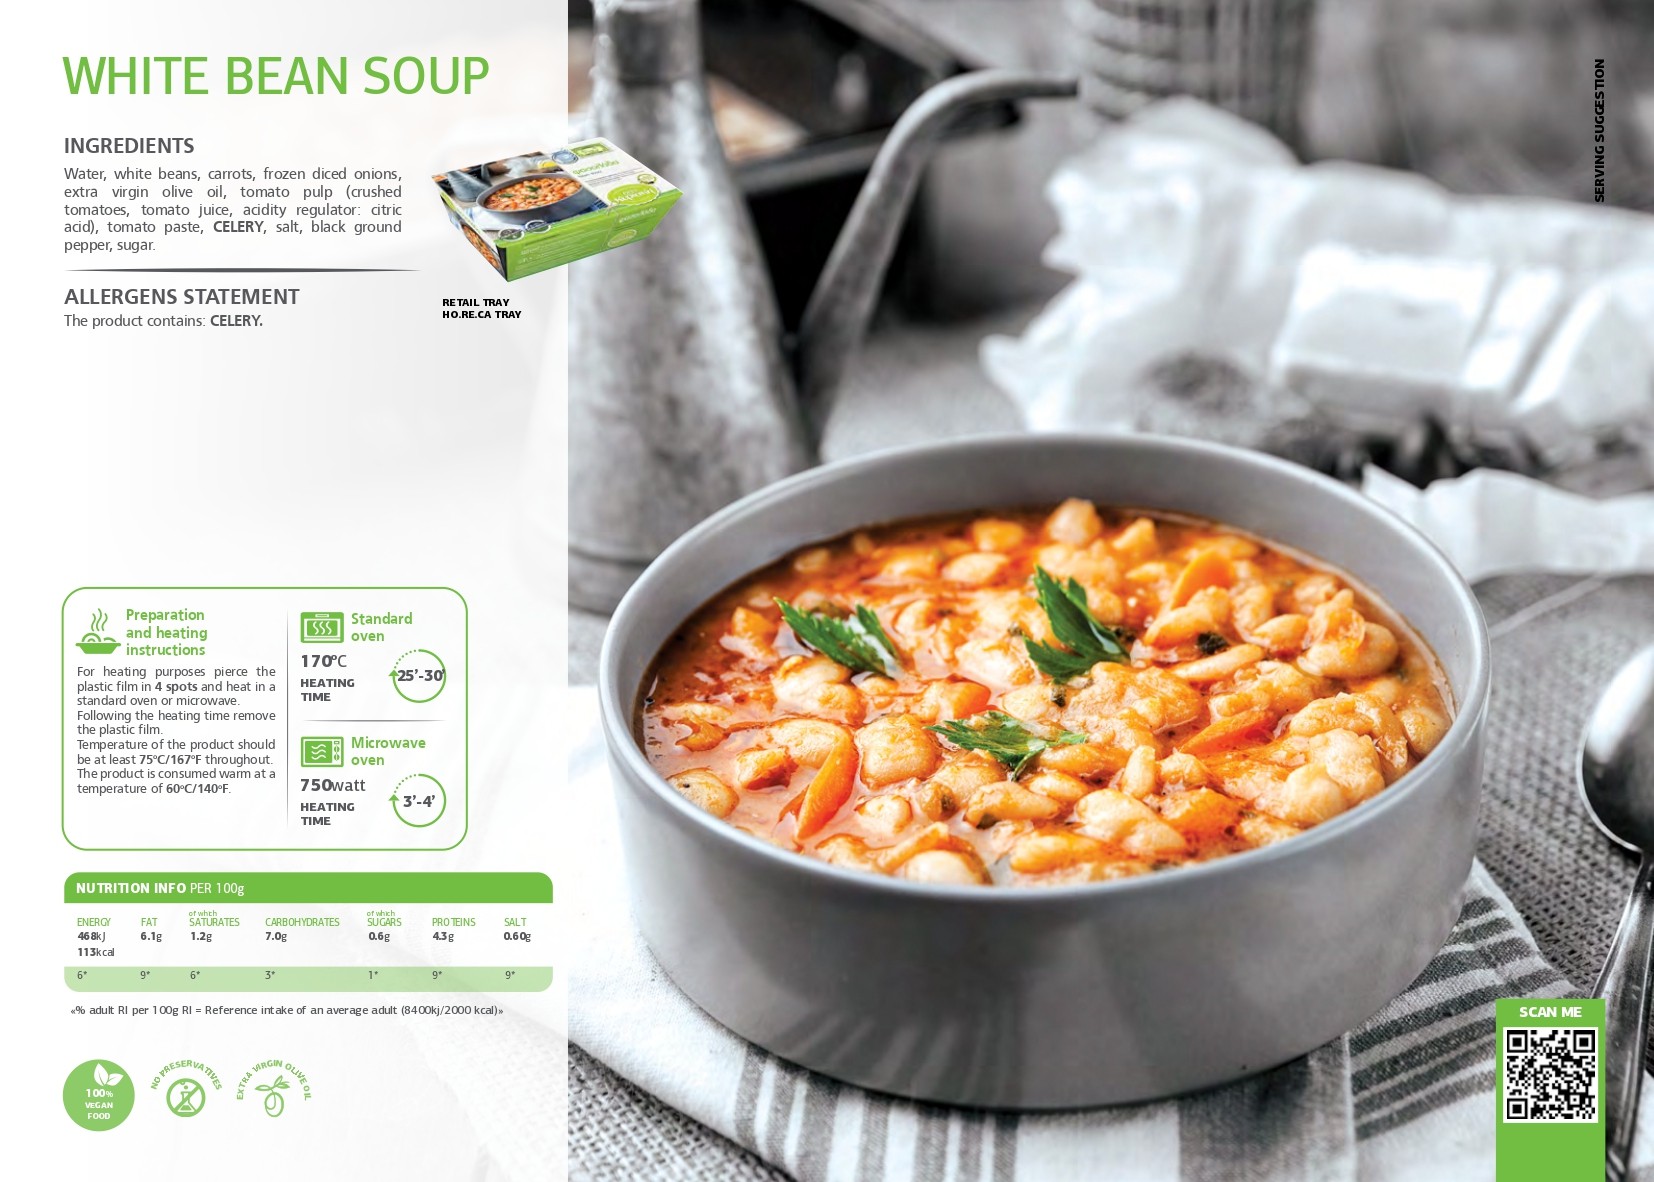 SK - White bean soup pdf image